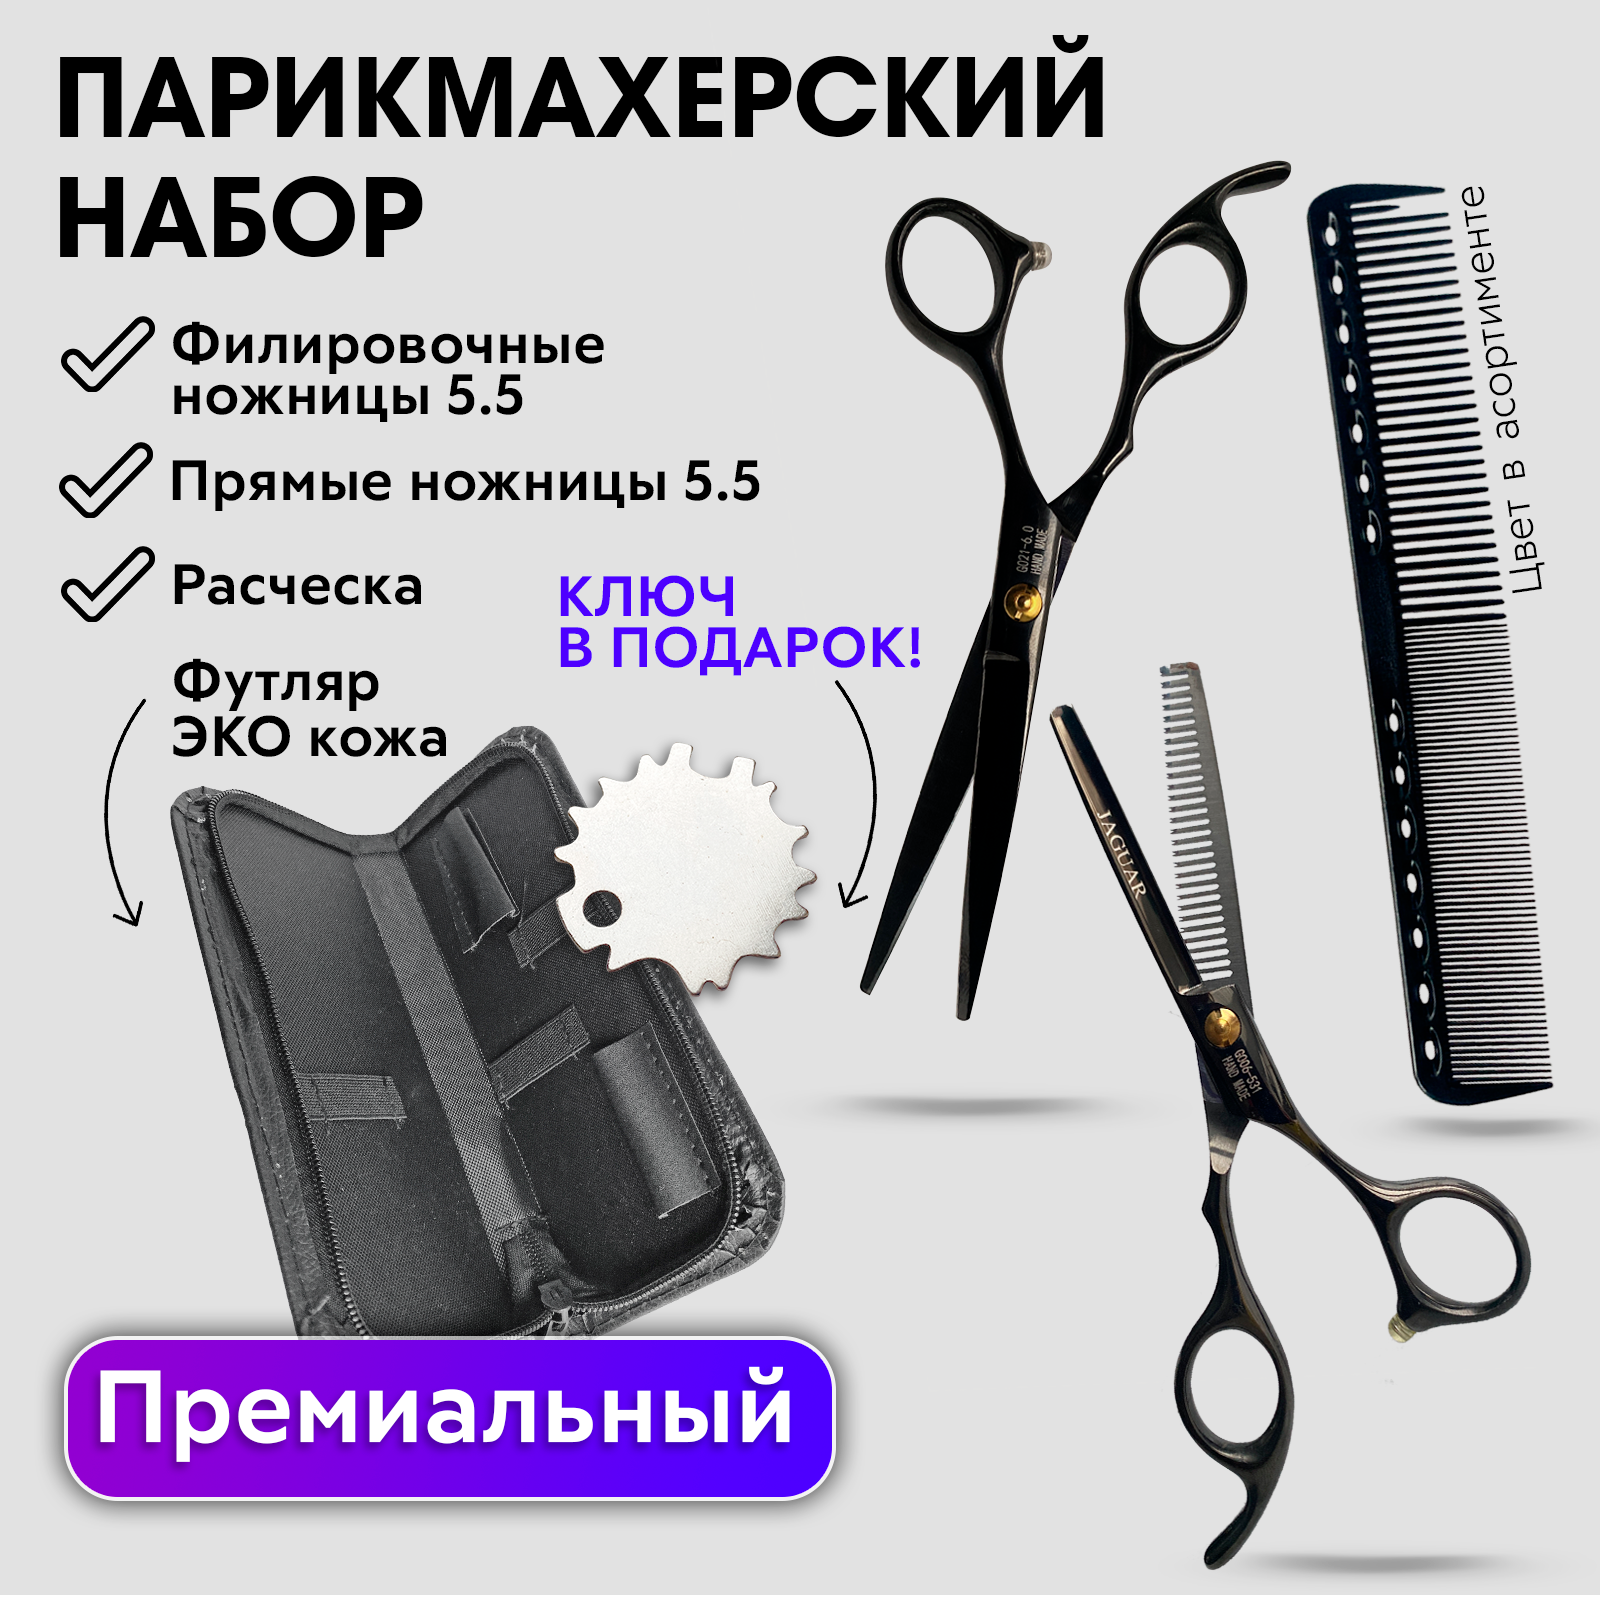 Набор Hожницы парикмахерские прямые Charites ножницы филировочные размер 5.5 черные+1485 набор машинка для стрижки волос триммер с lcd дисплеем профессиональные 14 насадок